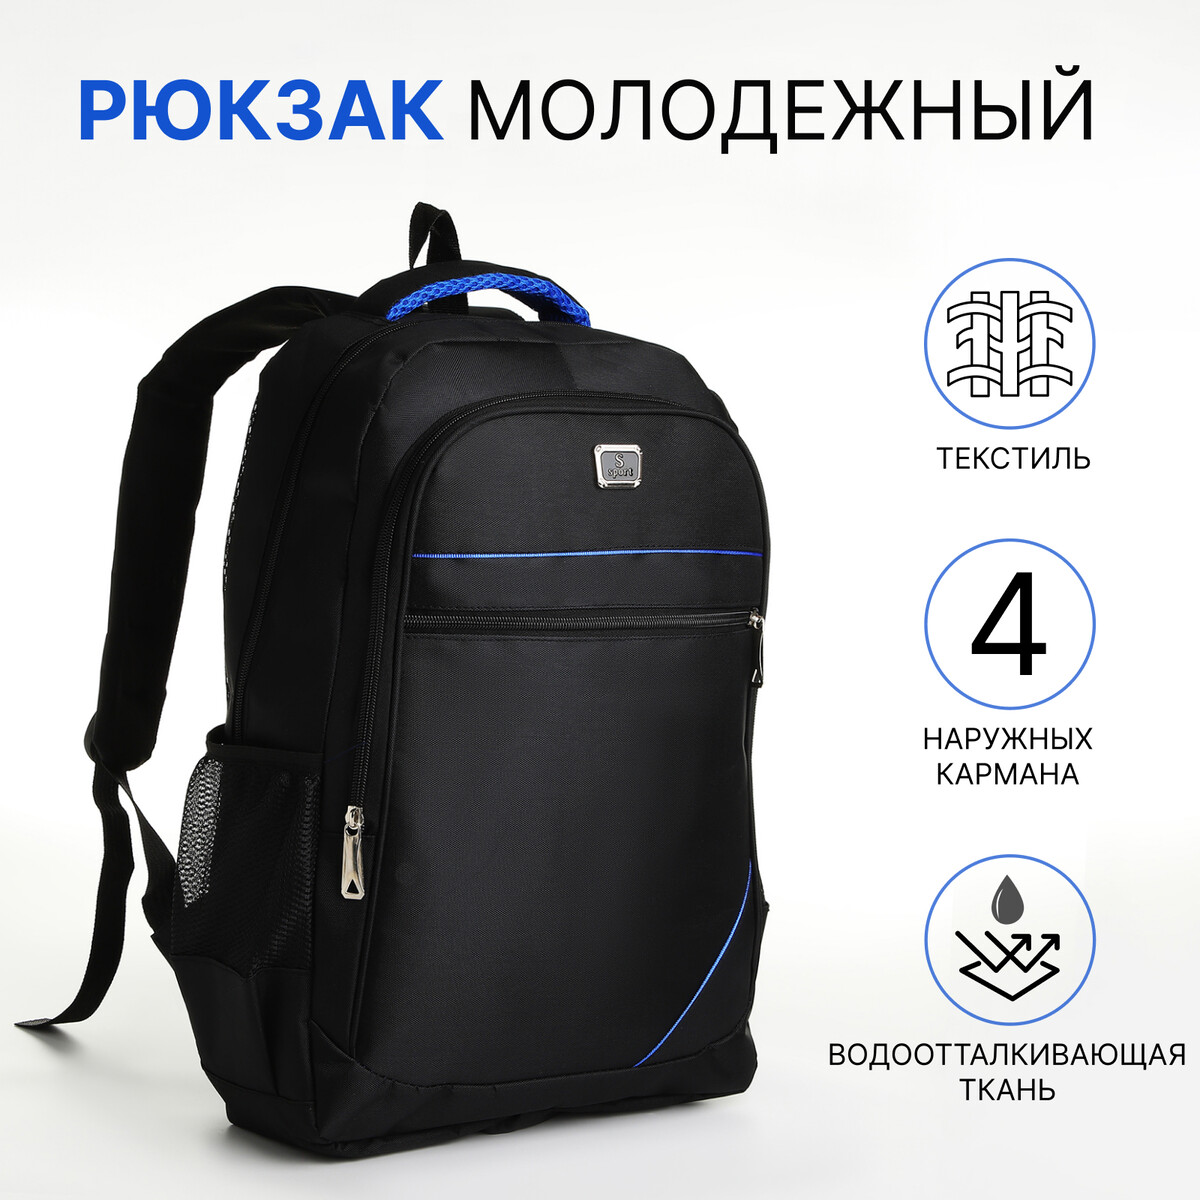 Рюкзак молодежный из текстиля на молнии, 4 кармана, цвет черный/синий рюкзак молодежный на молнии 4 кармана синий